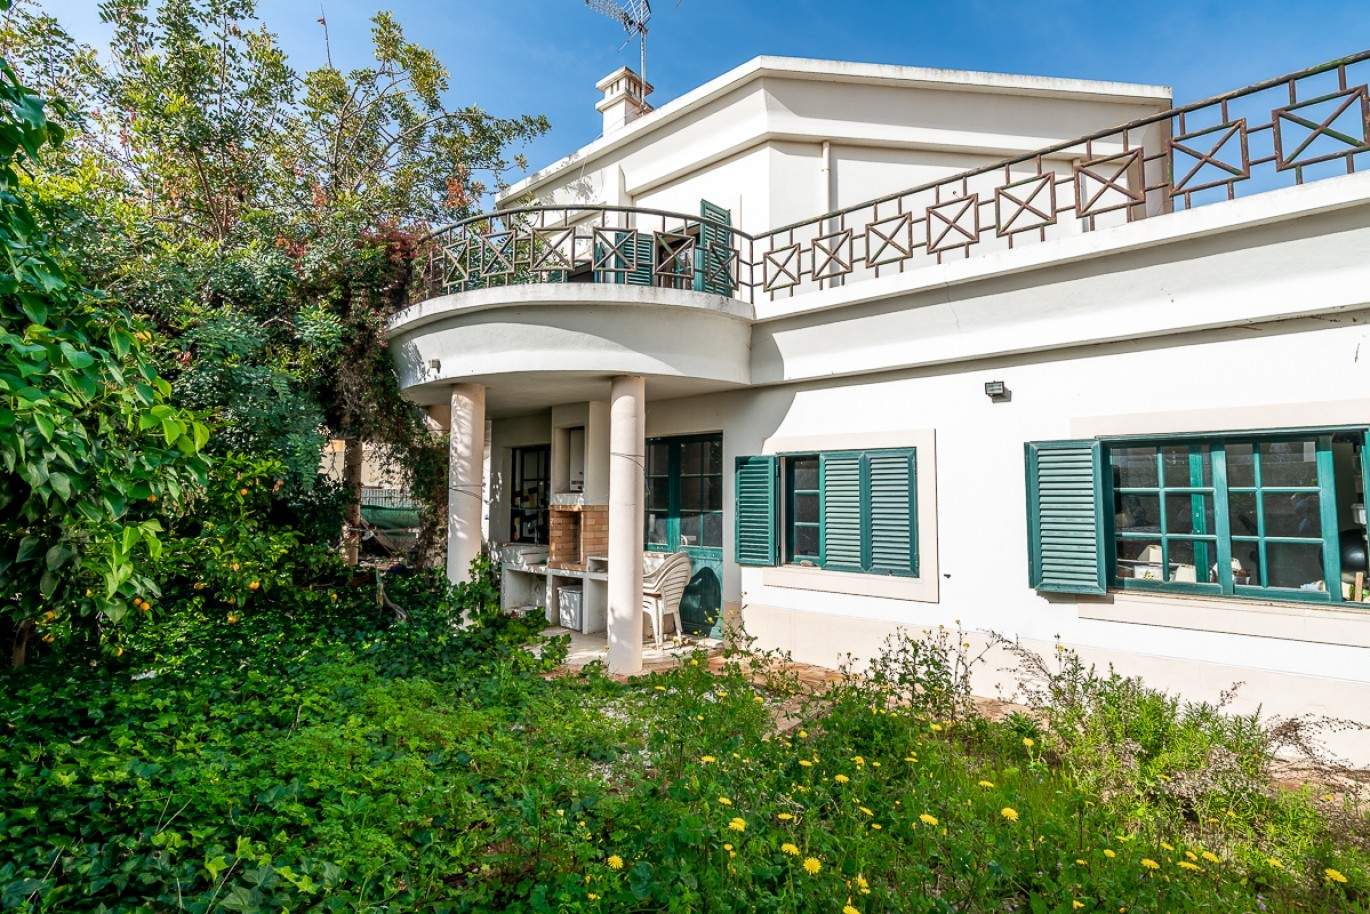 Maison avec jardin près de la mer à vendre, à Faro, Algarve, Portugal_97406